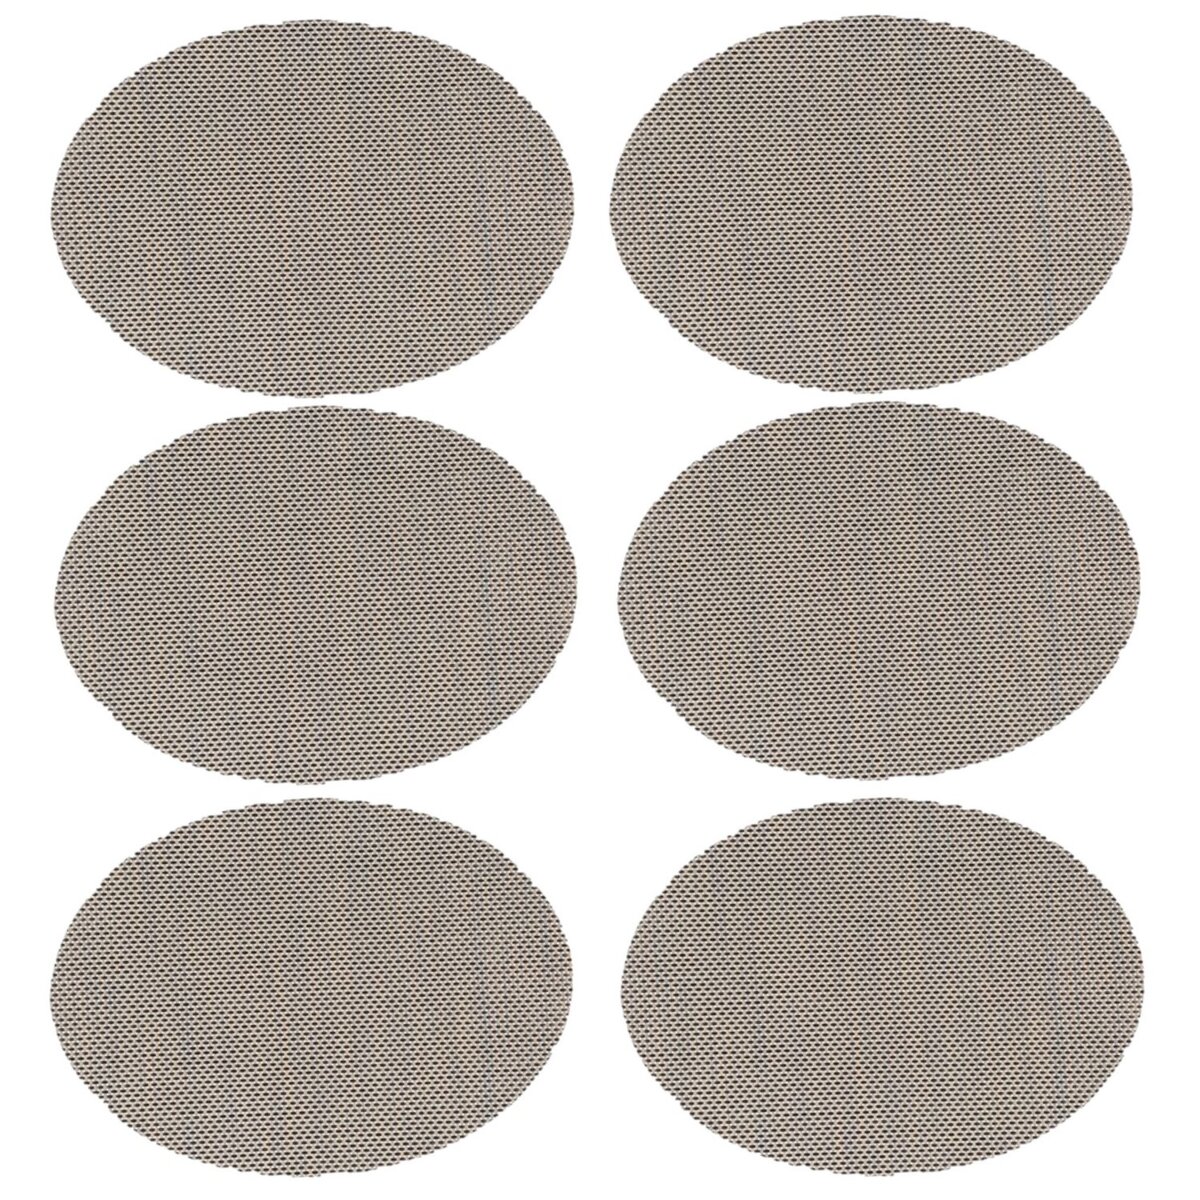 TOILINUX Lot de 6 Sets de table Maoli oval effet tissé - 45 x 35 cm - Noir et Blanc